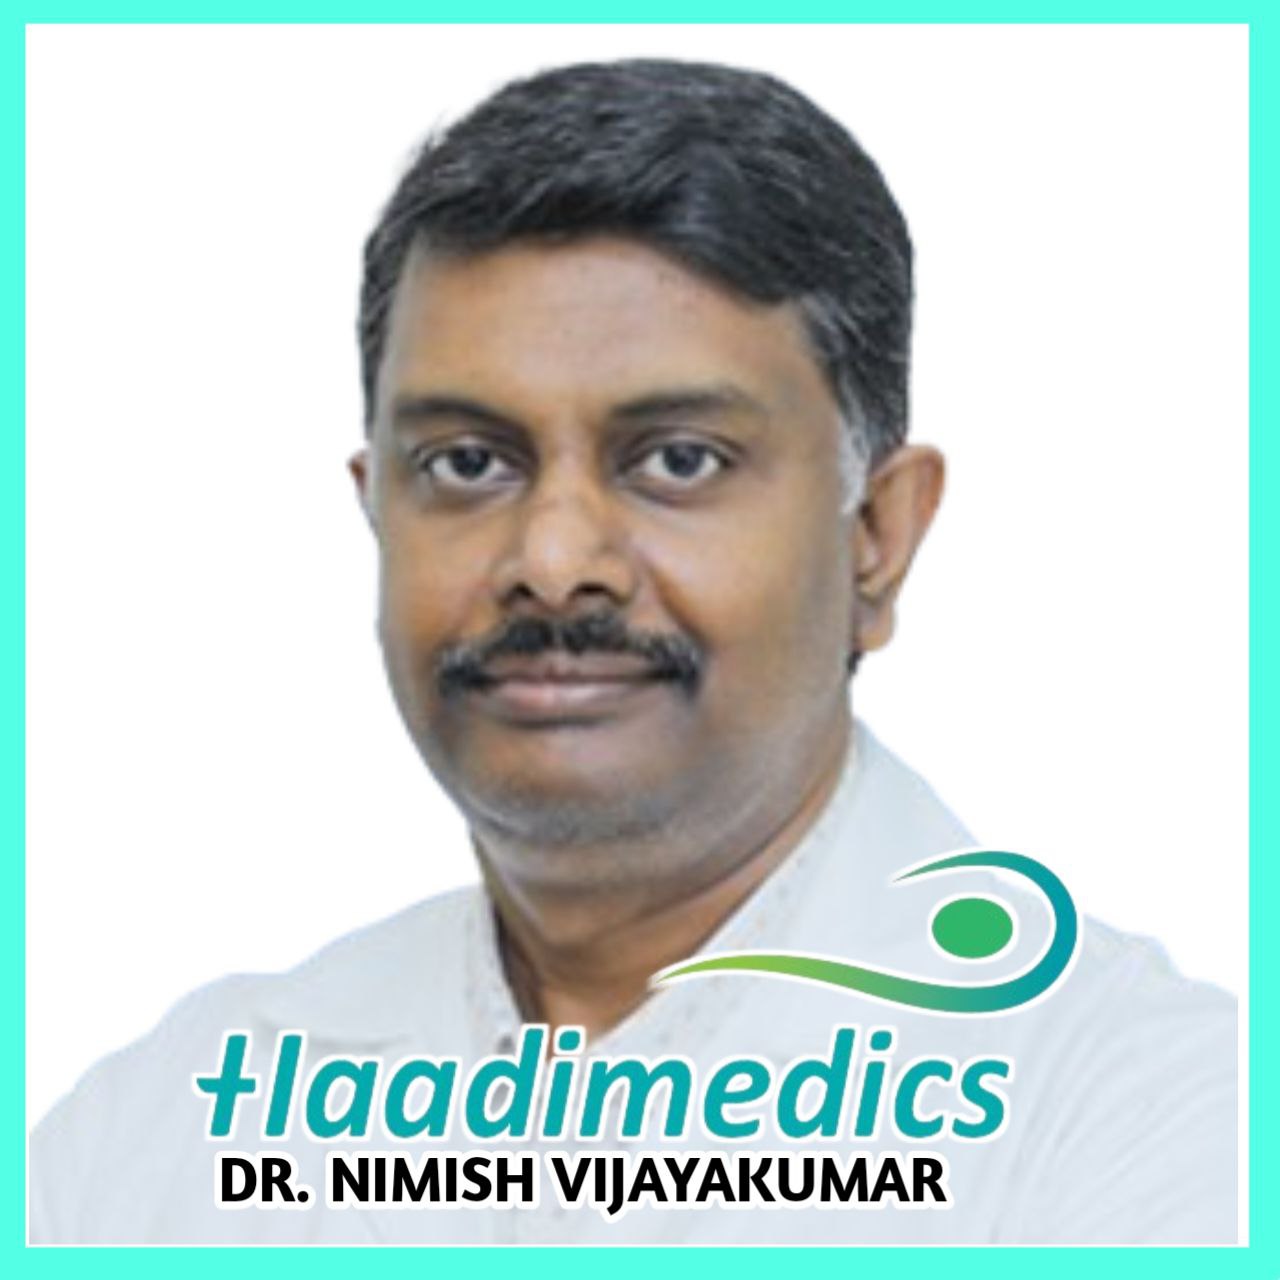 Dr. Nimish Vijayakumar